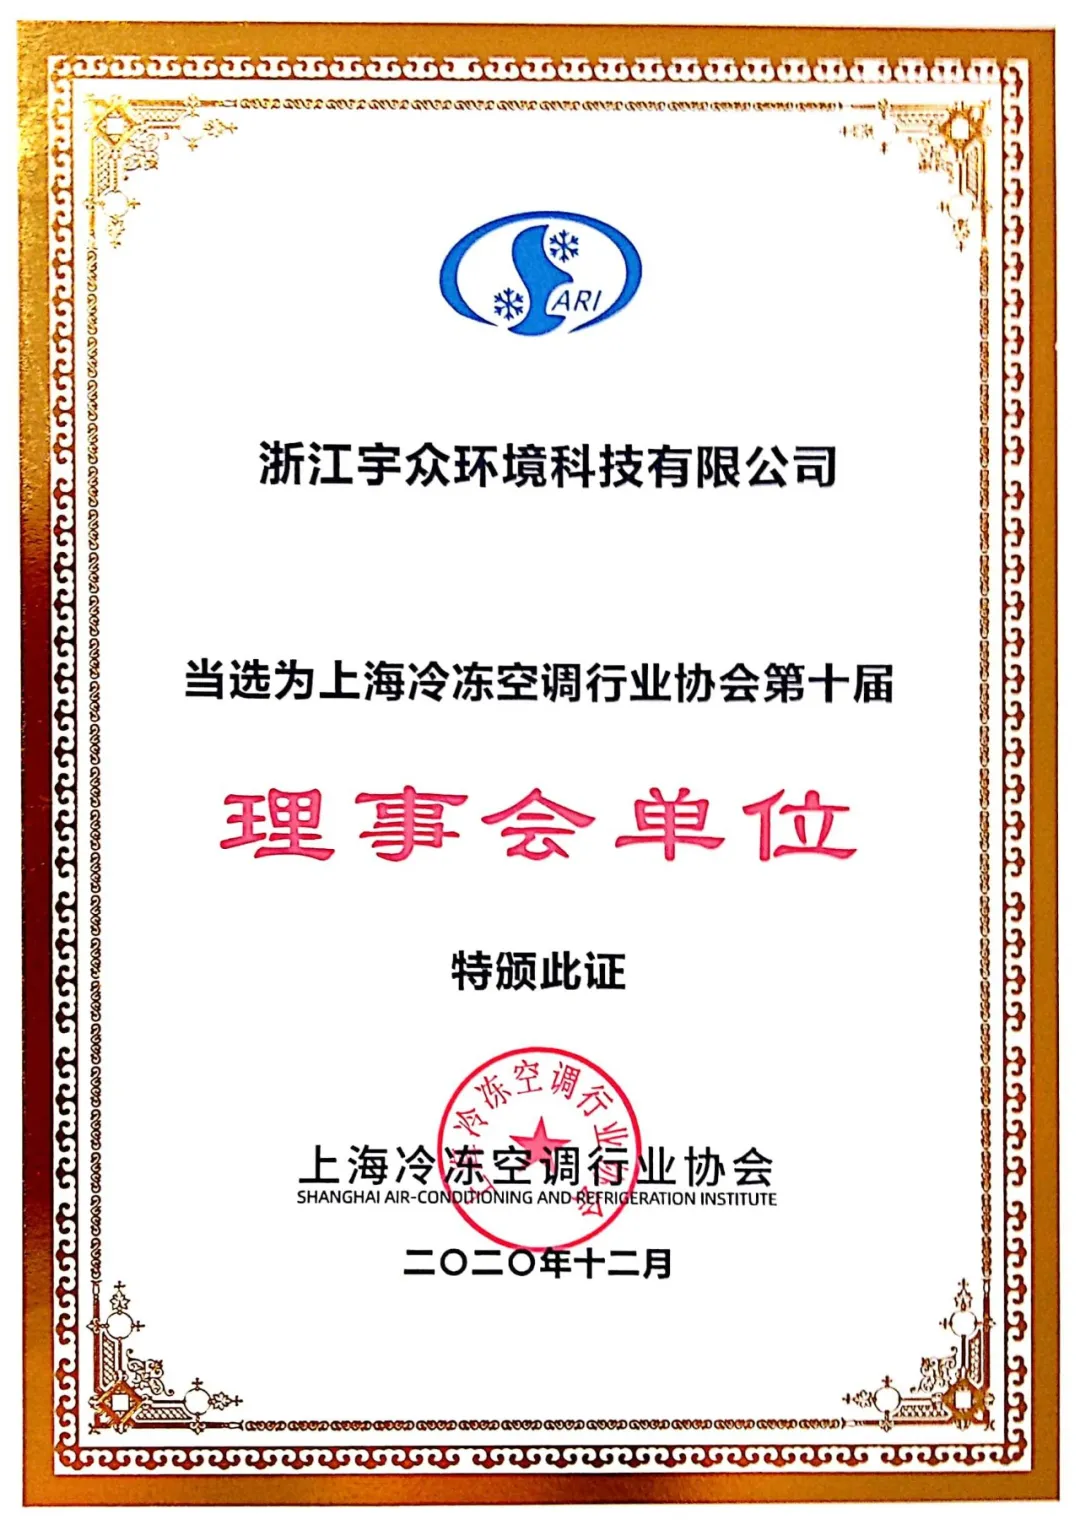 热烈祝贺浙江宇众环境科技有限公司成为上海冷协理事单位